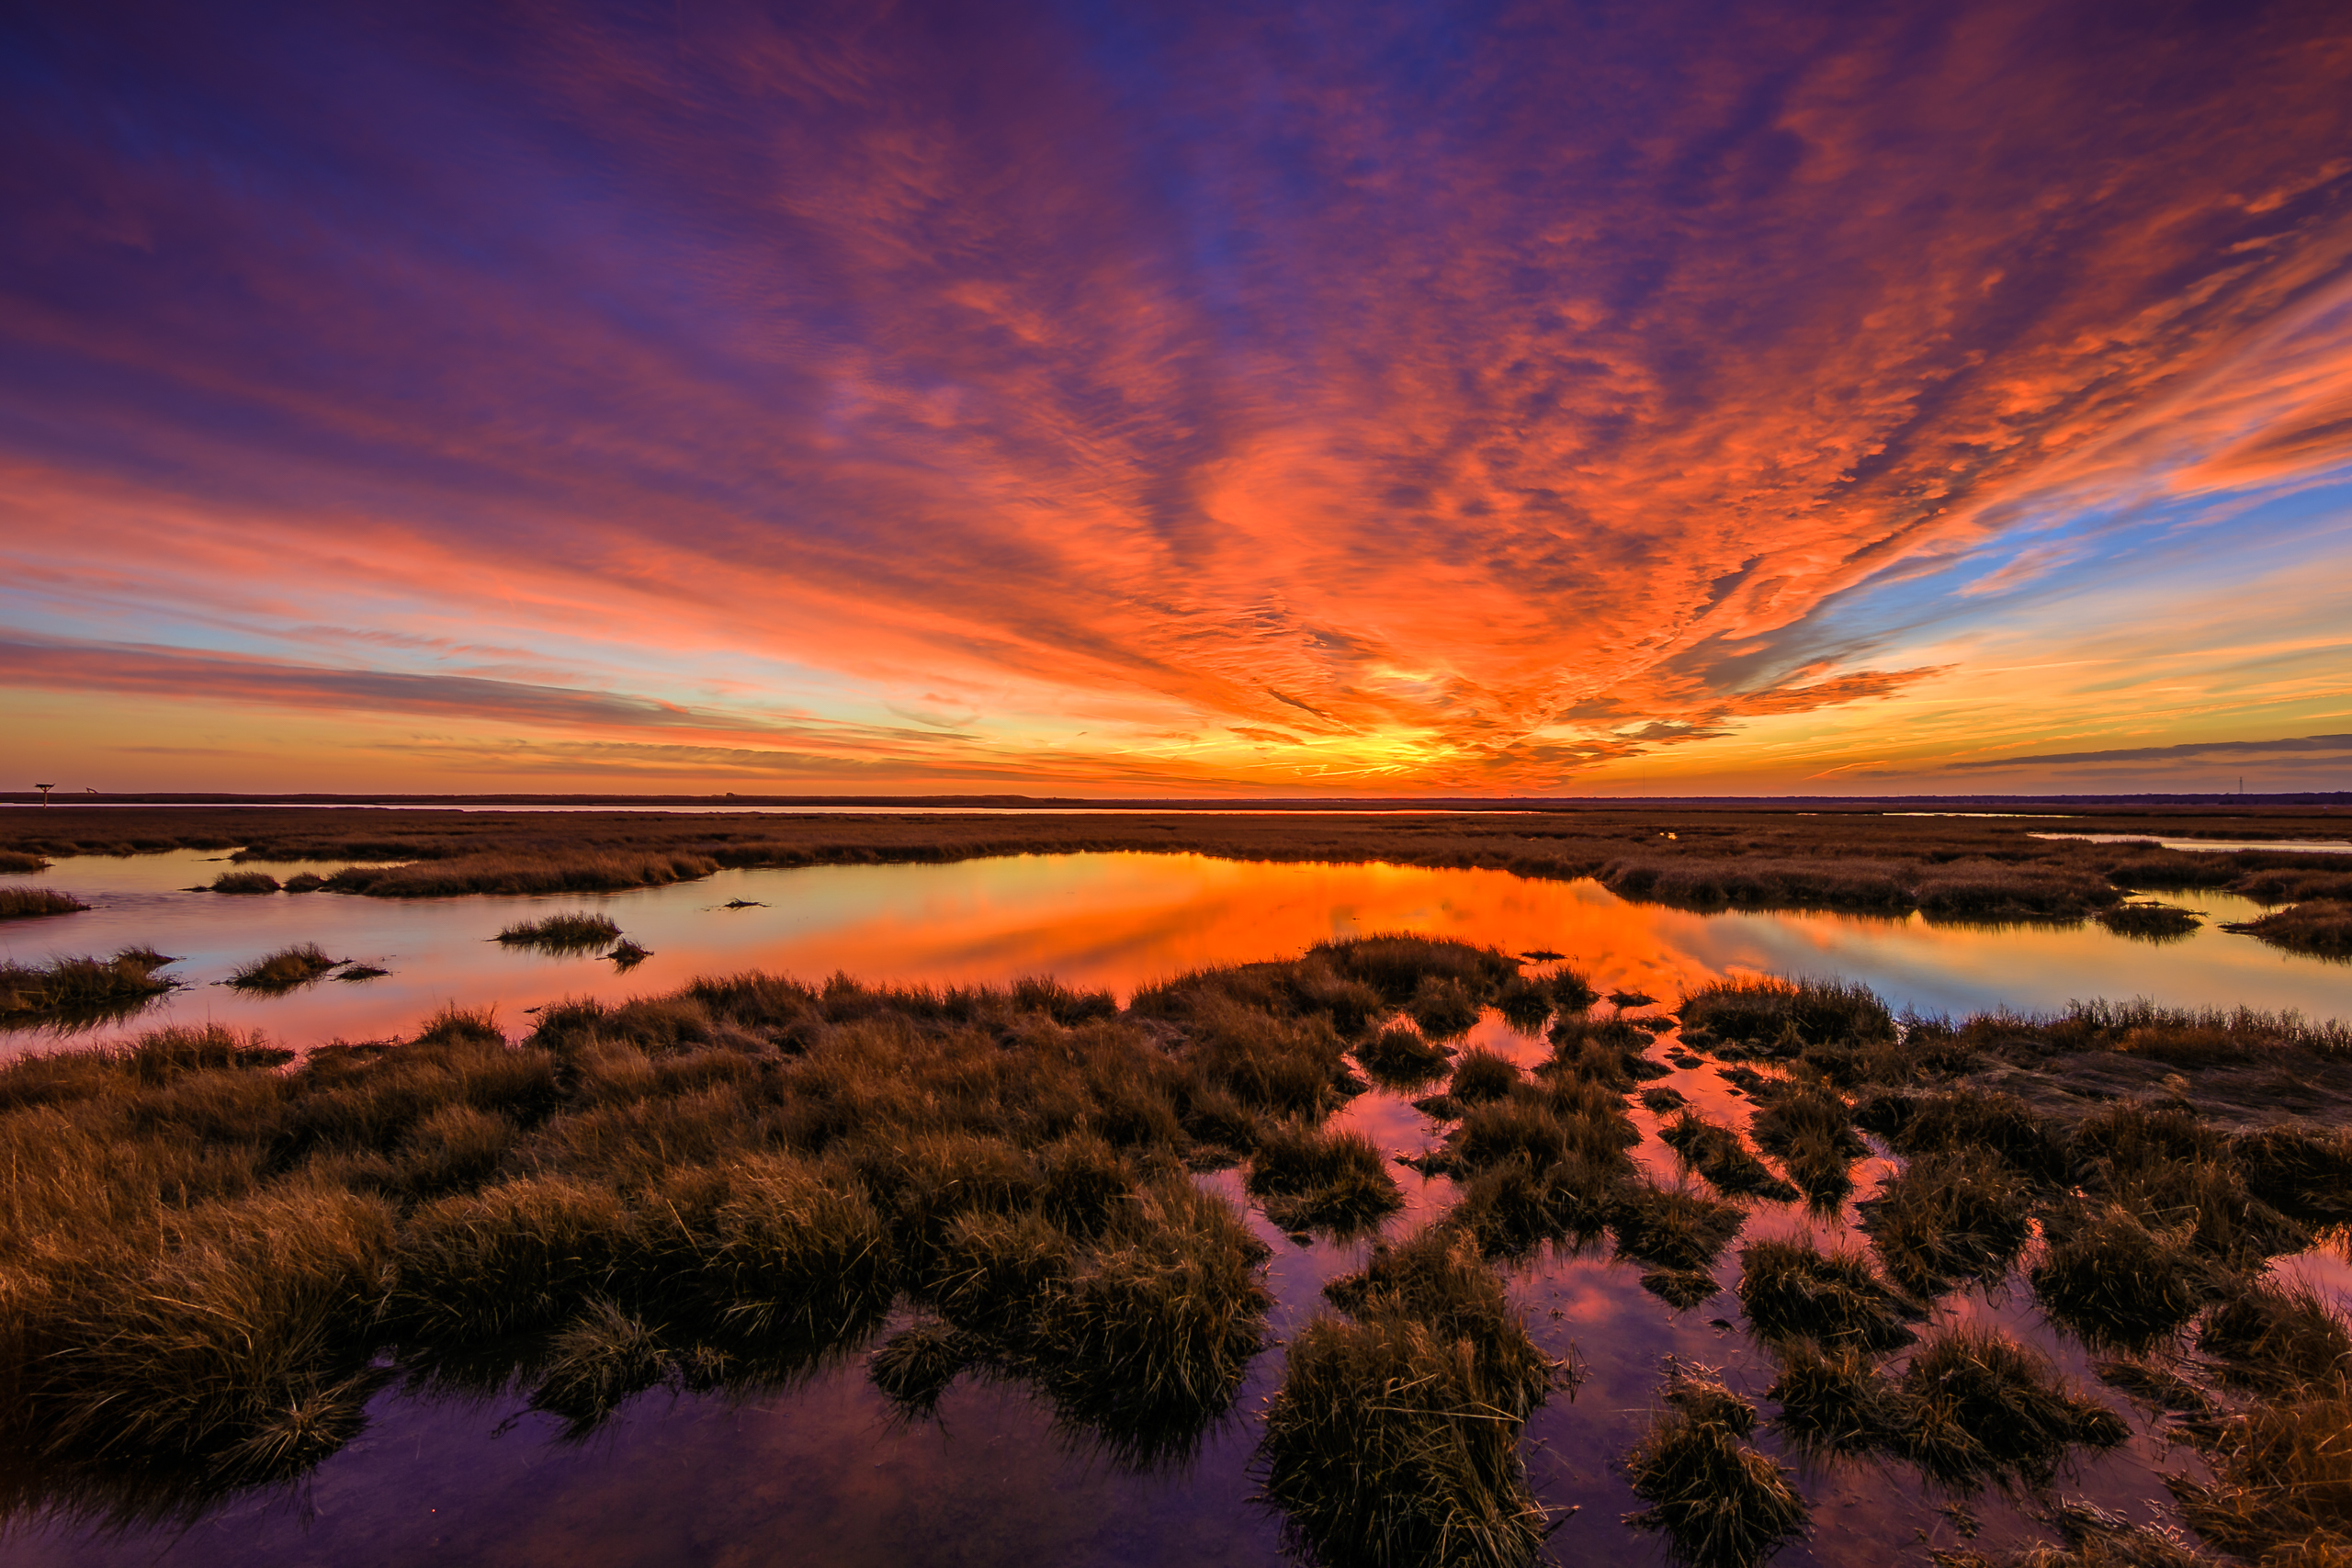 Fiery winter sunset photo over marsh